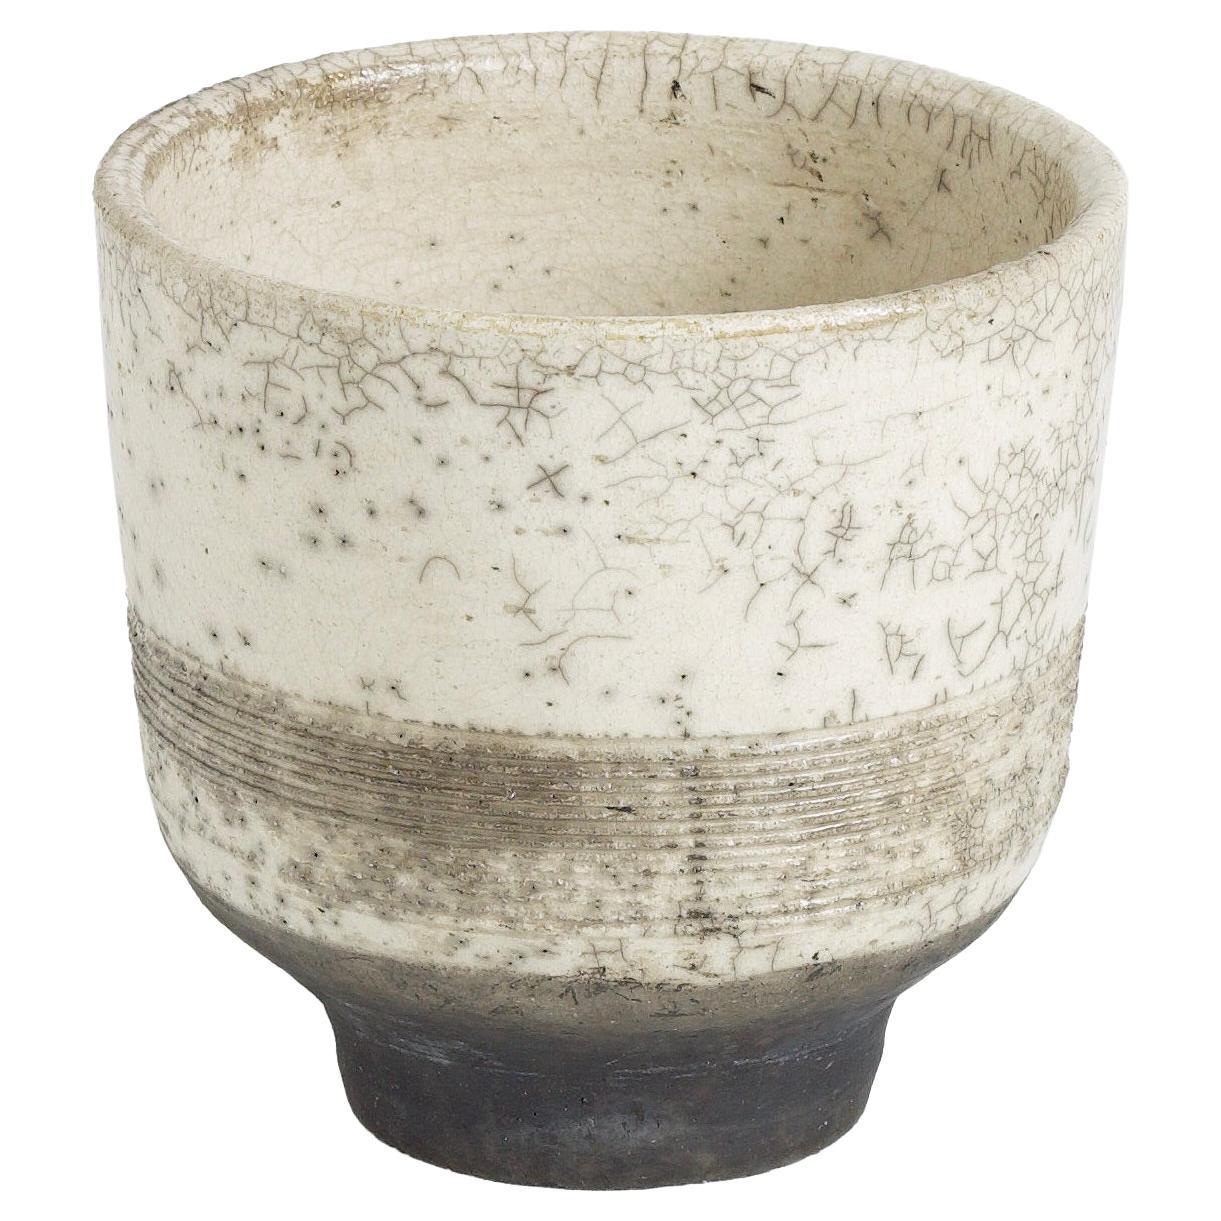 Japanese Yunomi Tea Cup Raku Ceramic Black Base For Sale